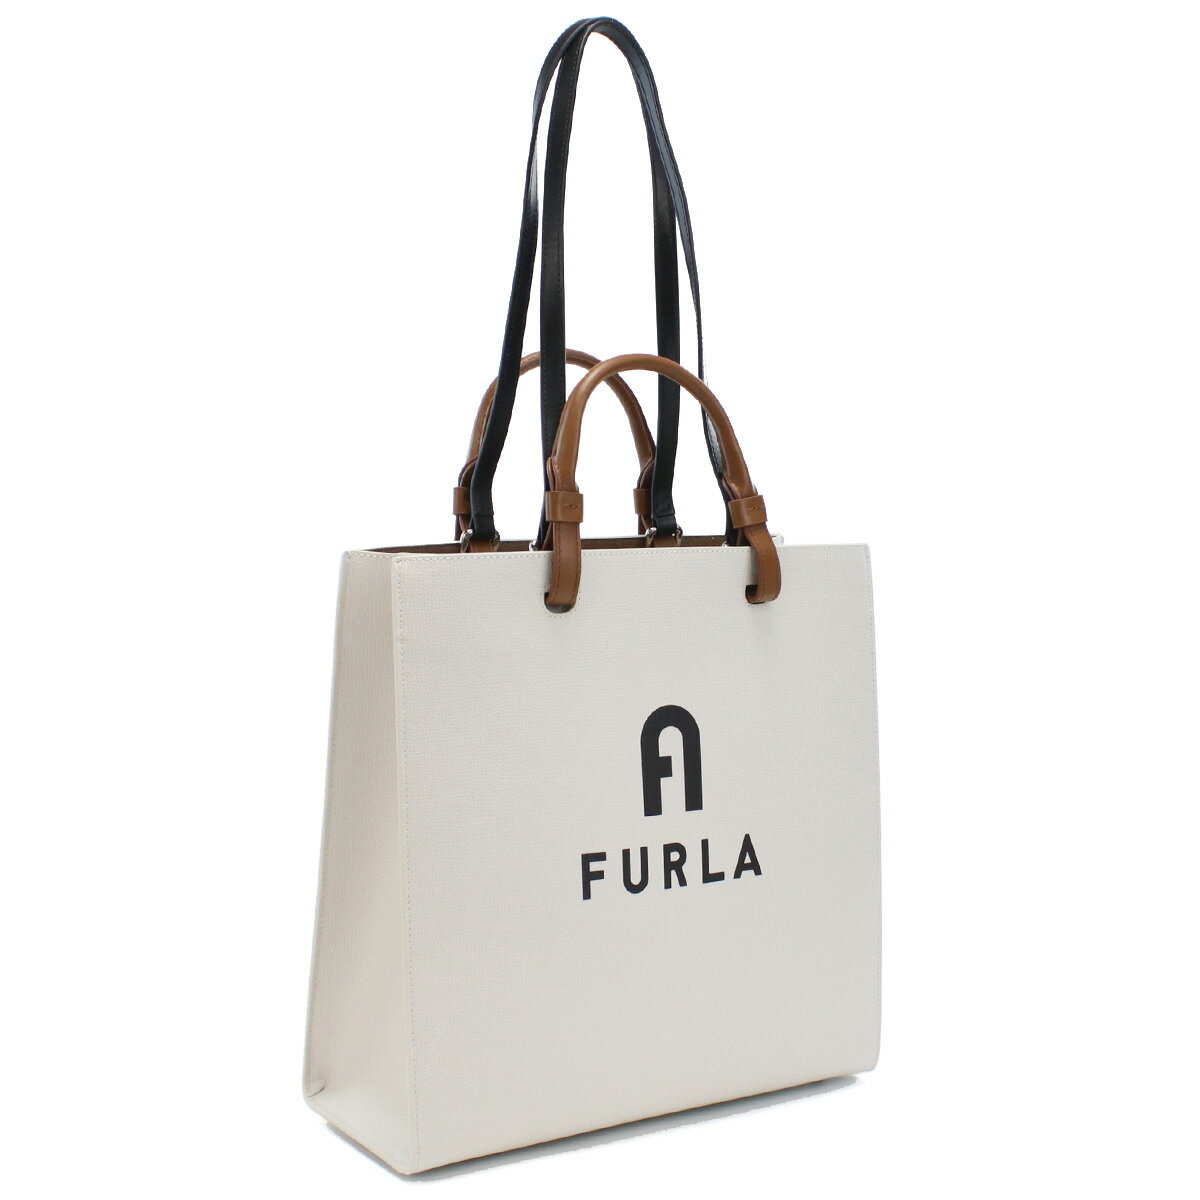 フルラ FURLA FURLA VARSITY トートバッグ ブランド WB00728 BX1230 1843S MARSHMALLOW+NERO ホワイト系 bag-01 new-01 母の日